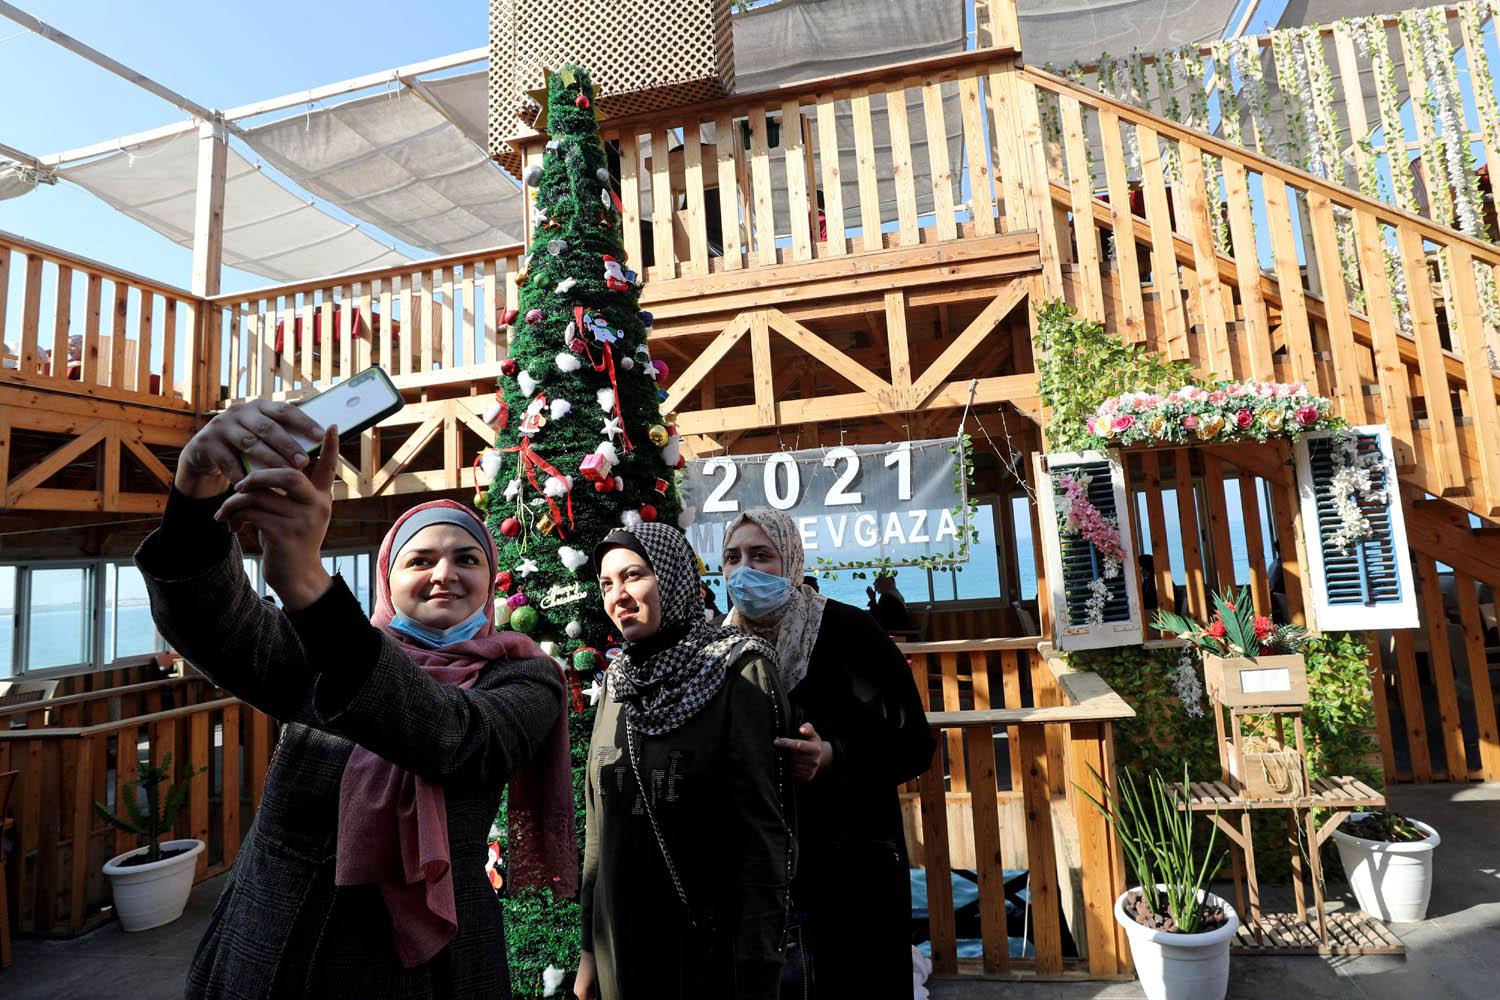 فلسطينيات يصورن انفسهن سيلفي مع شجرة عيد الميلاد في مقهى على ساحل غزة